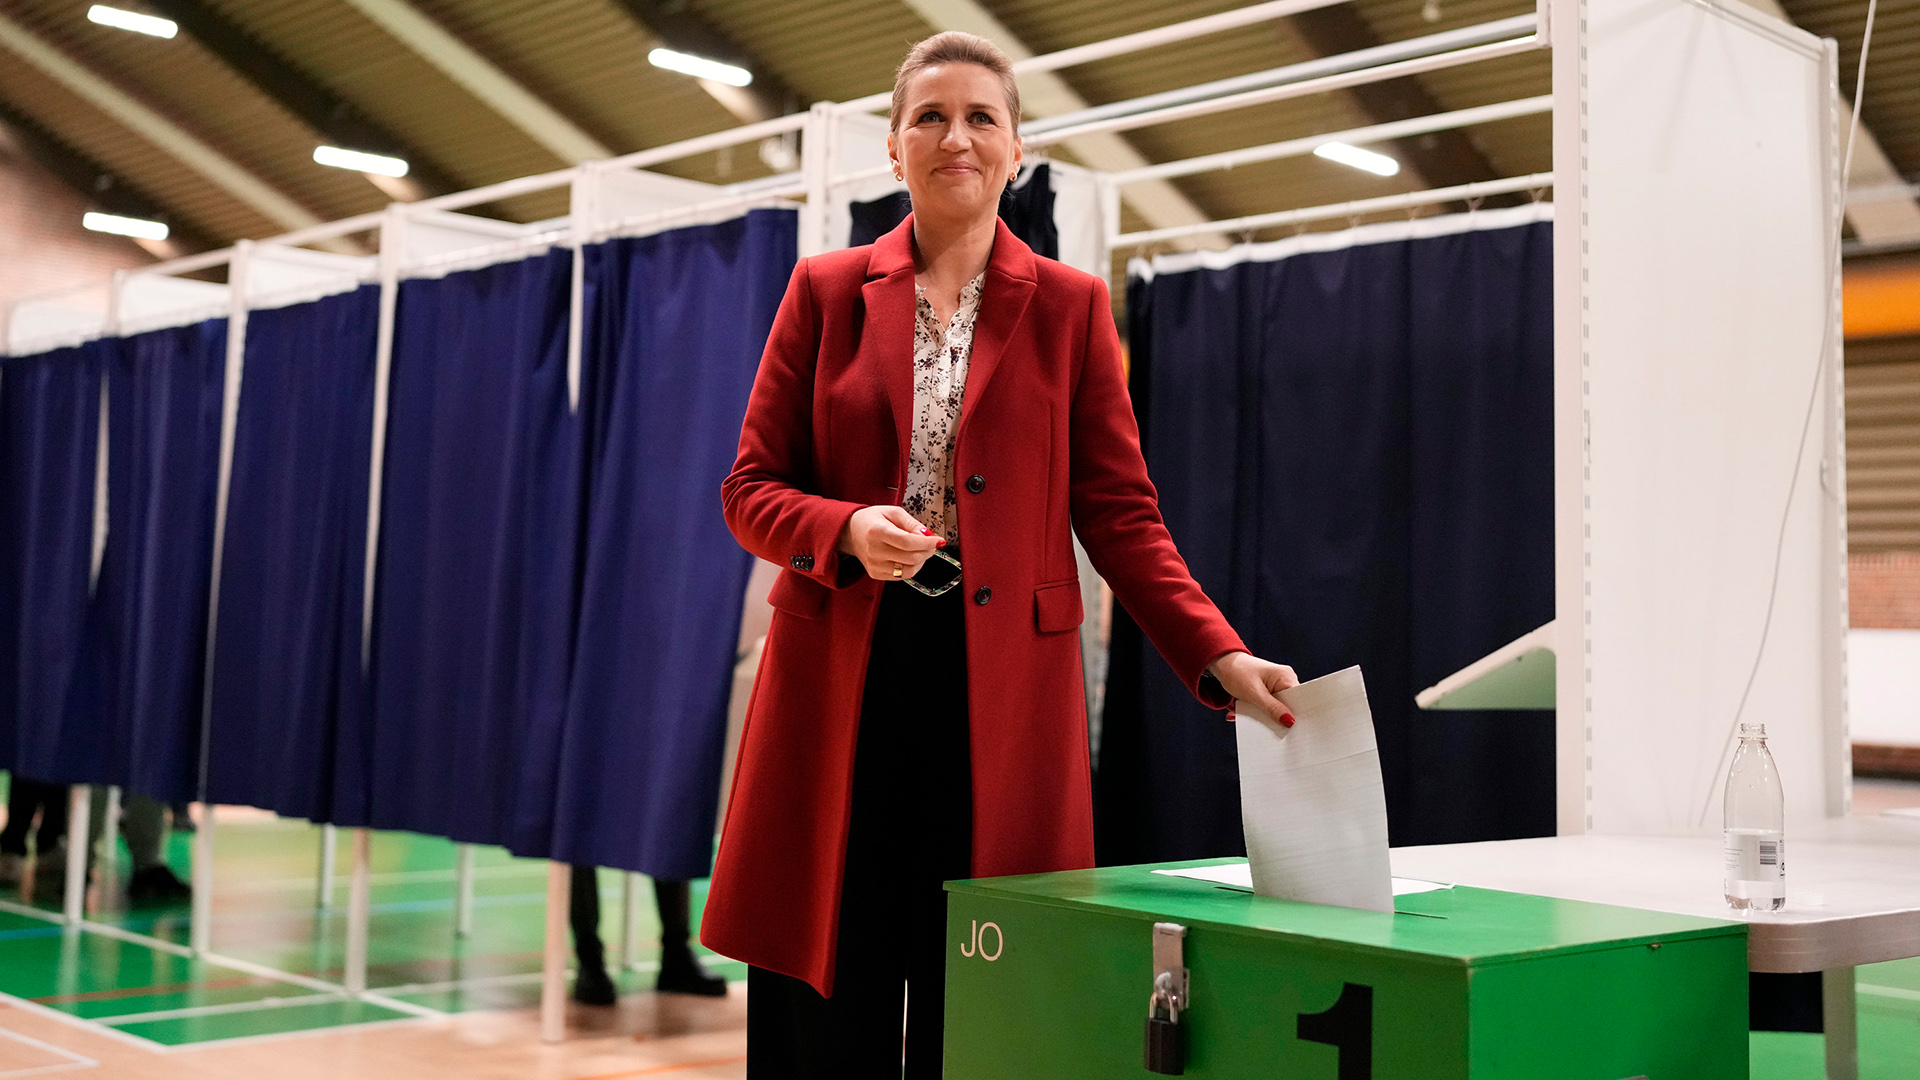 Dänemarks Regierungschefin Mette Frederiksen nach einer Debatte vor den Parlamentswahlen in Dänemark.